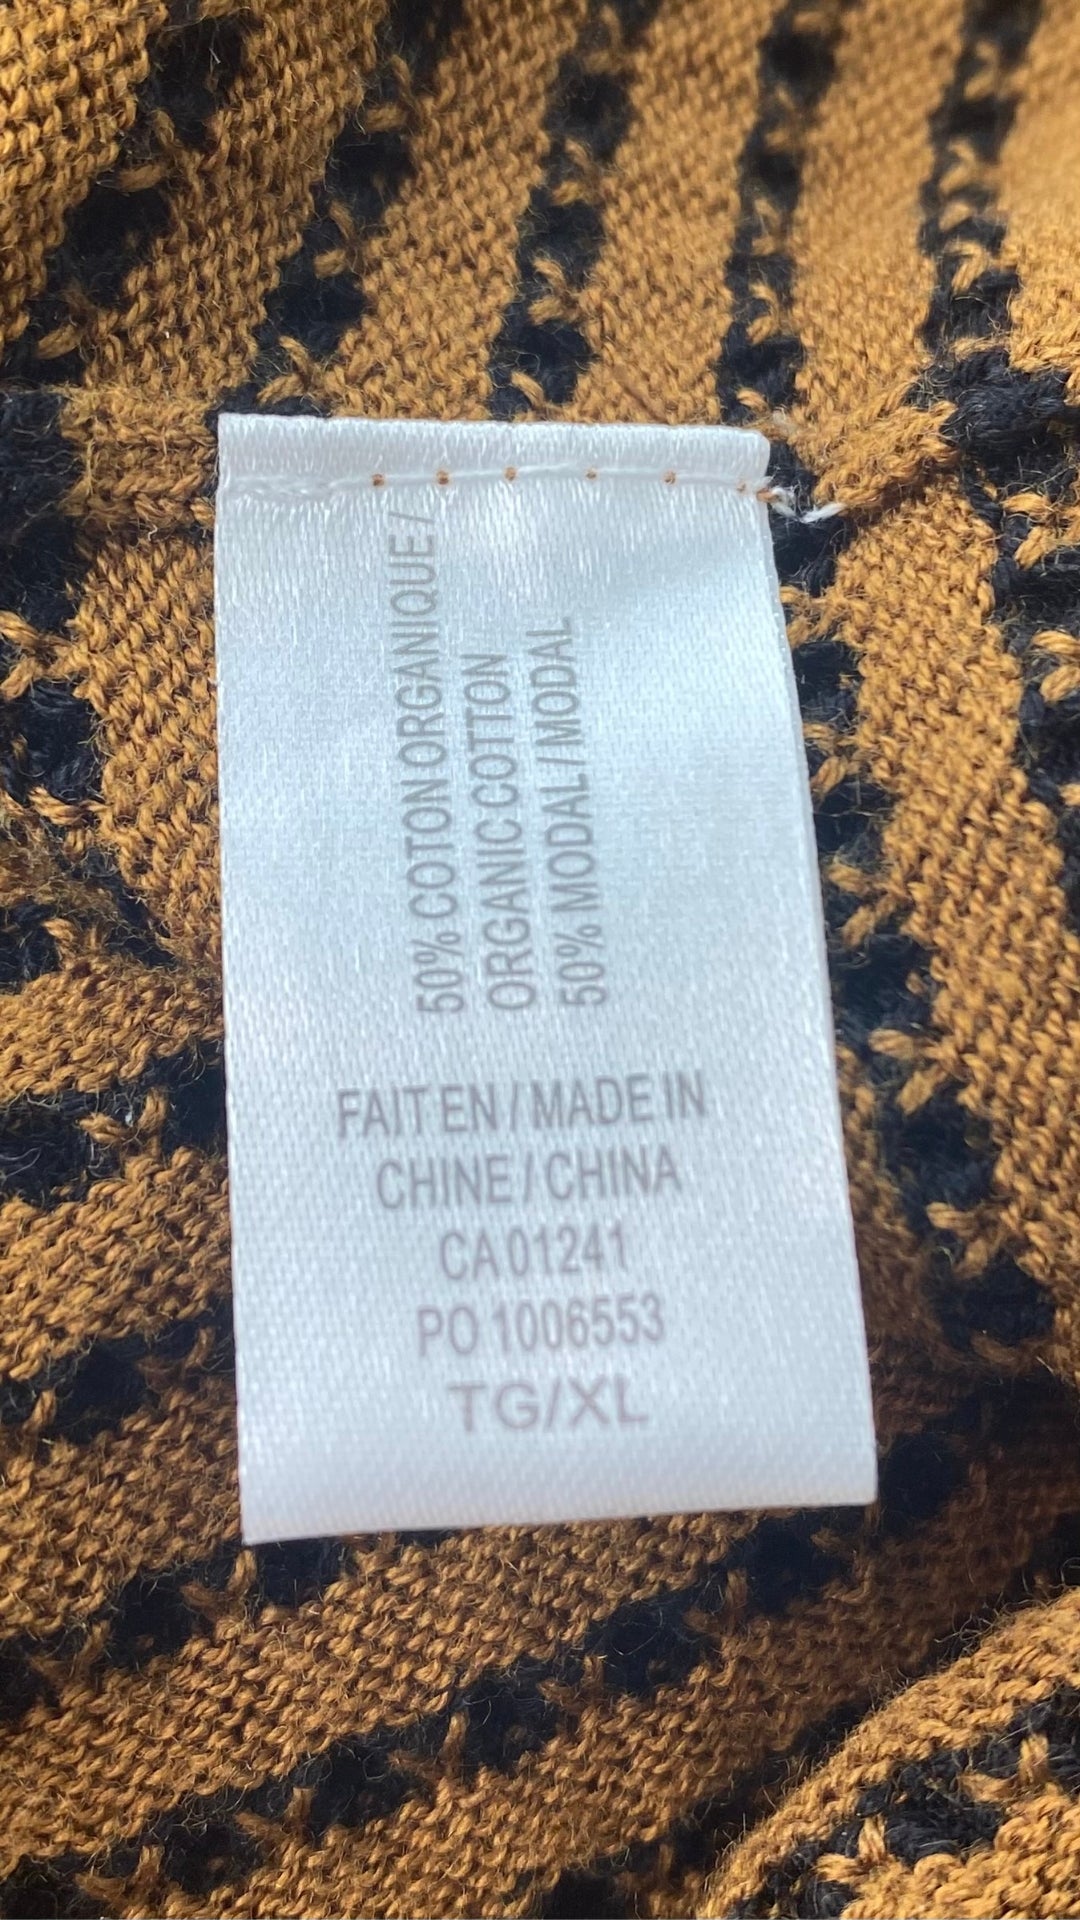 Chandail en tricot texturé noir et camel Contemporaine, taille xl (mais fait plus medium oversize ou large). Vue de l'étiquette de composition.